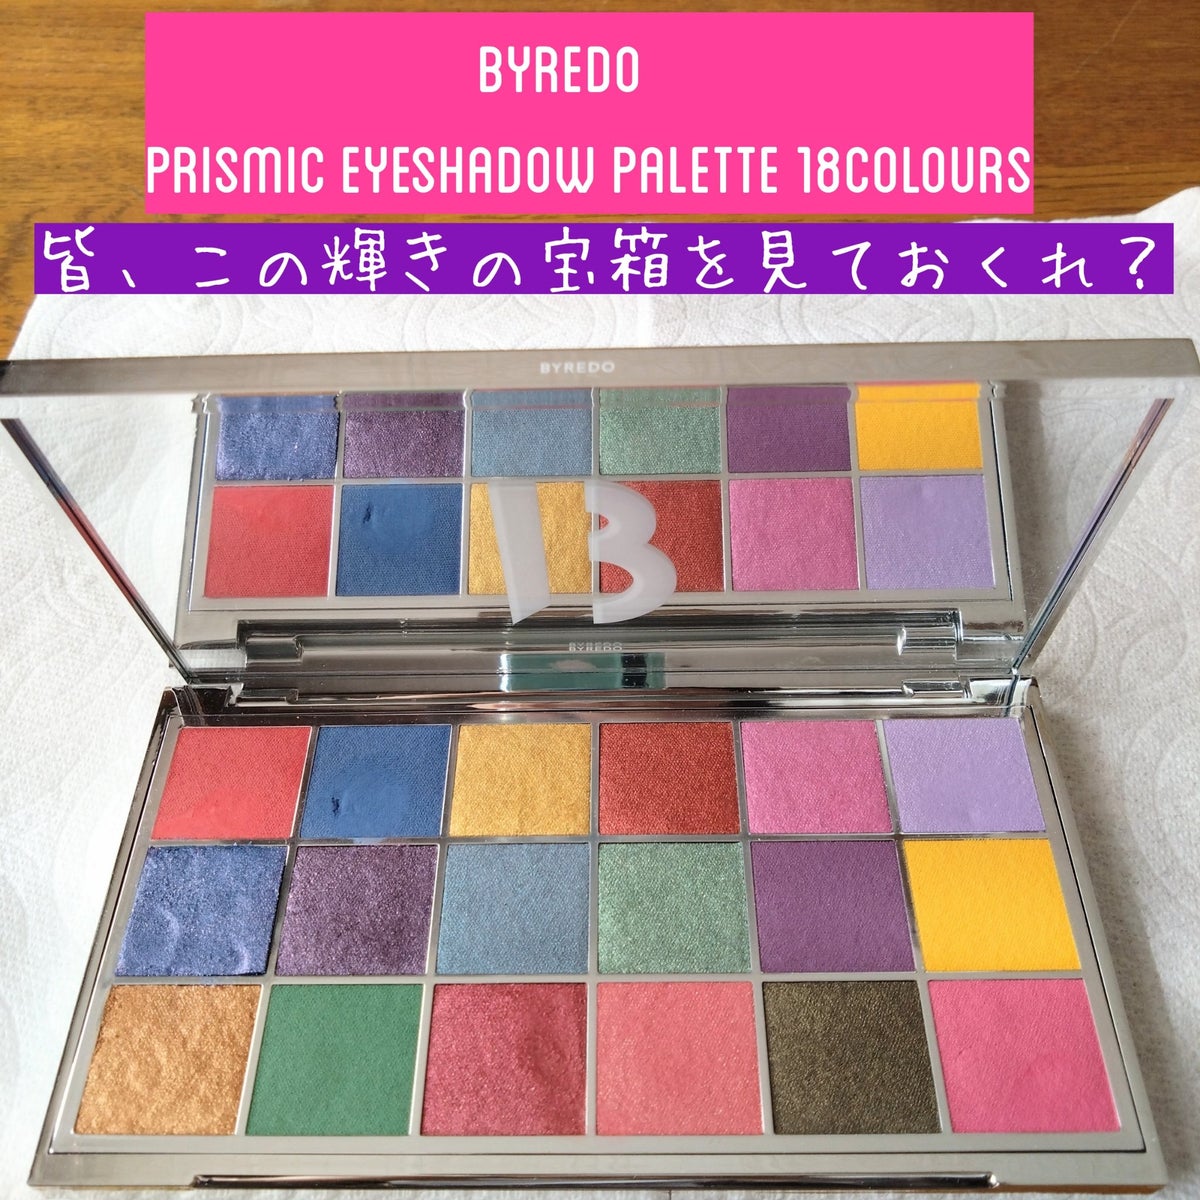 Byredo Prismic 18-colour eyeshadow